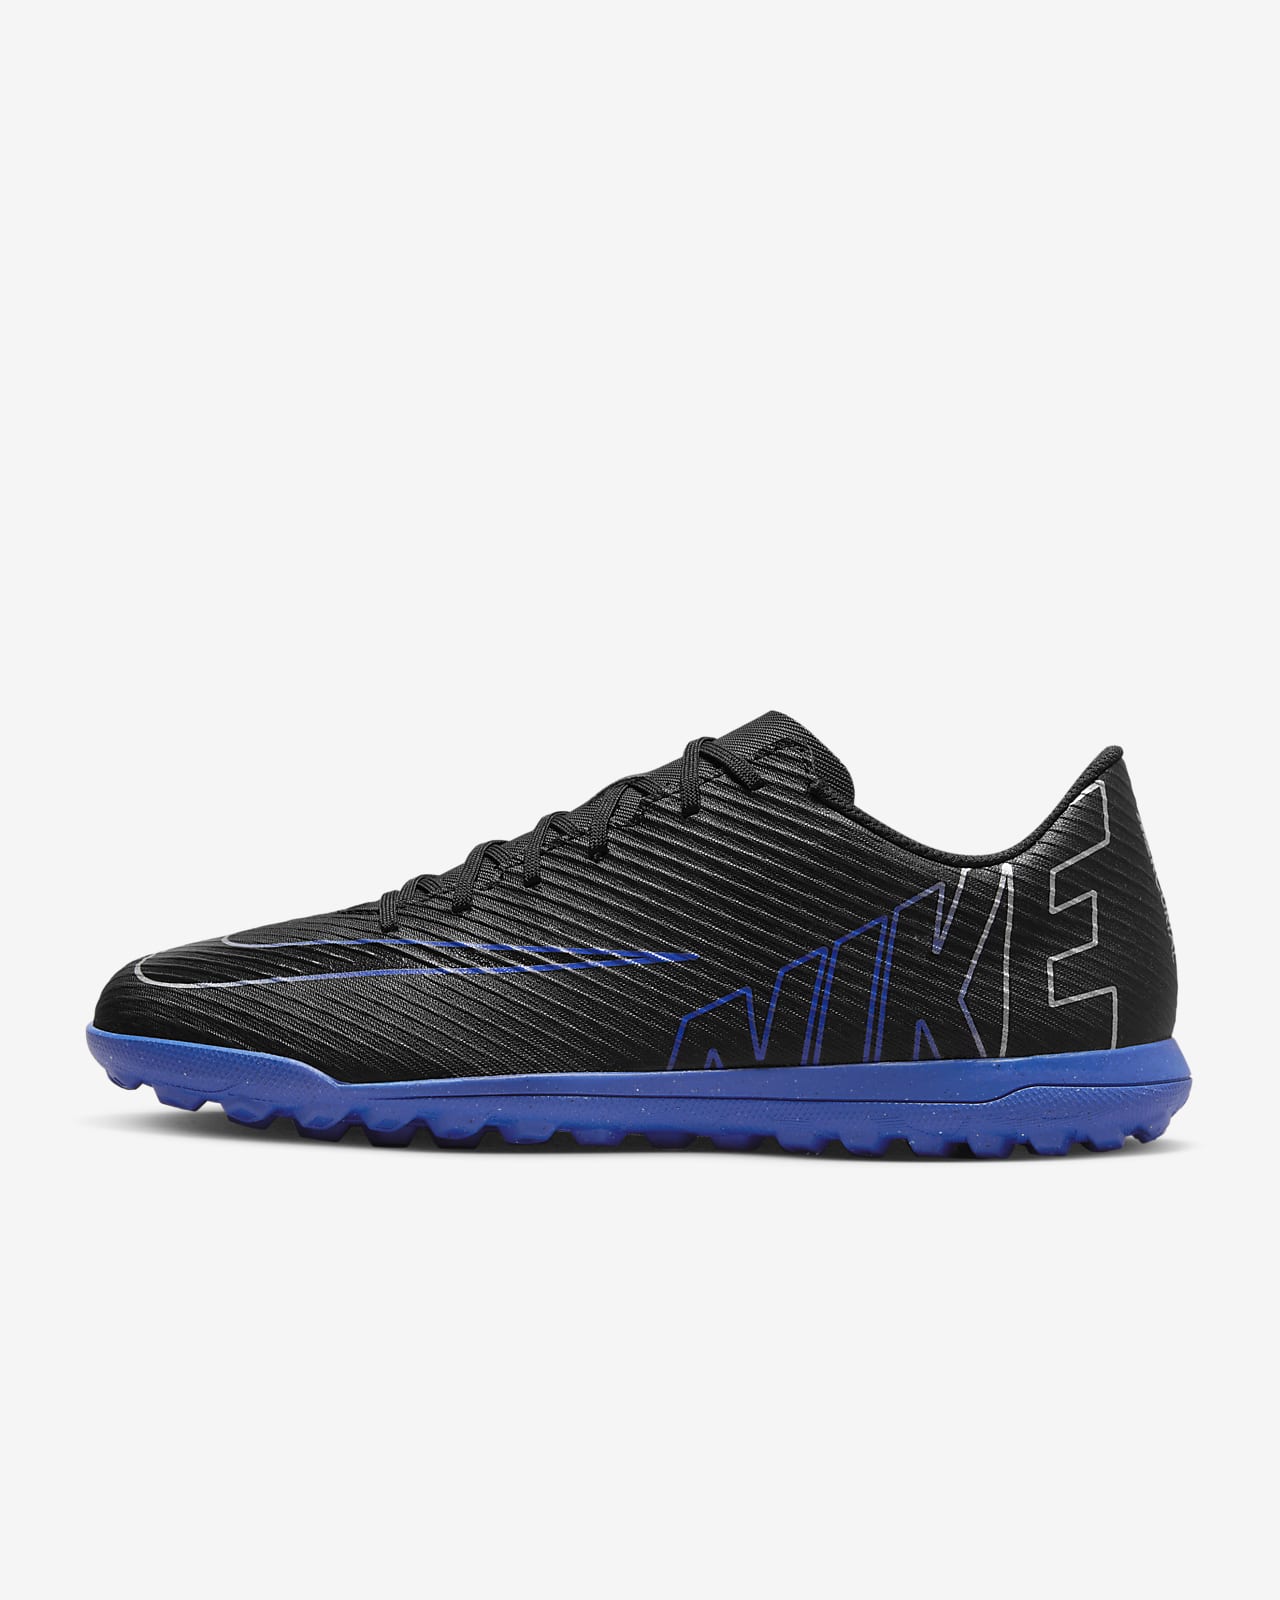 Chaussure de foot basse pour surface synthétique Nike Mercurial Vapor 15 Club